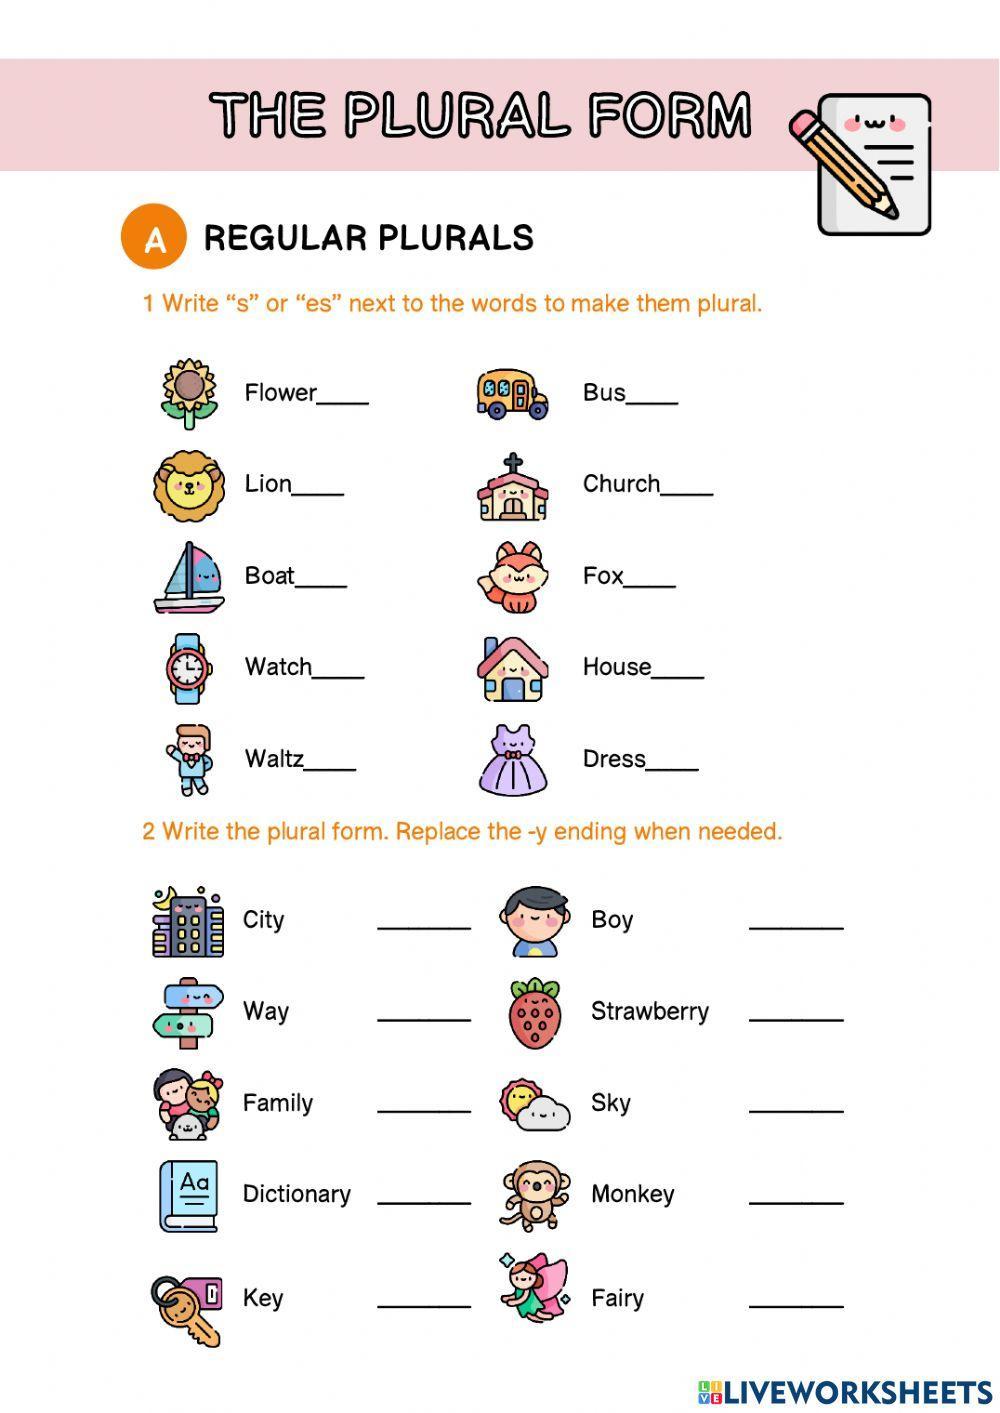 Plural form worksheet